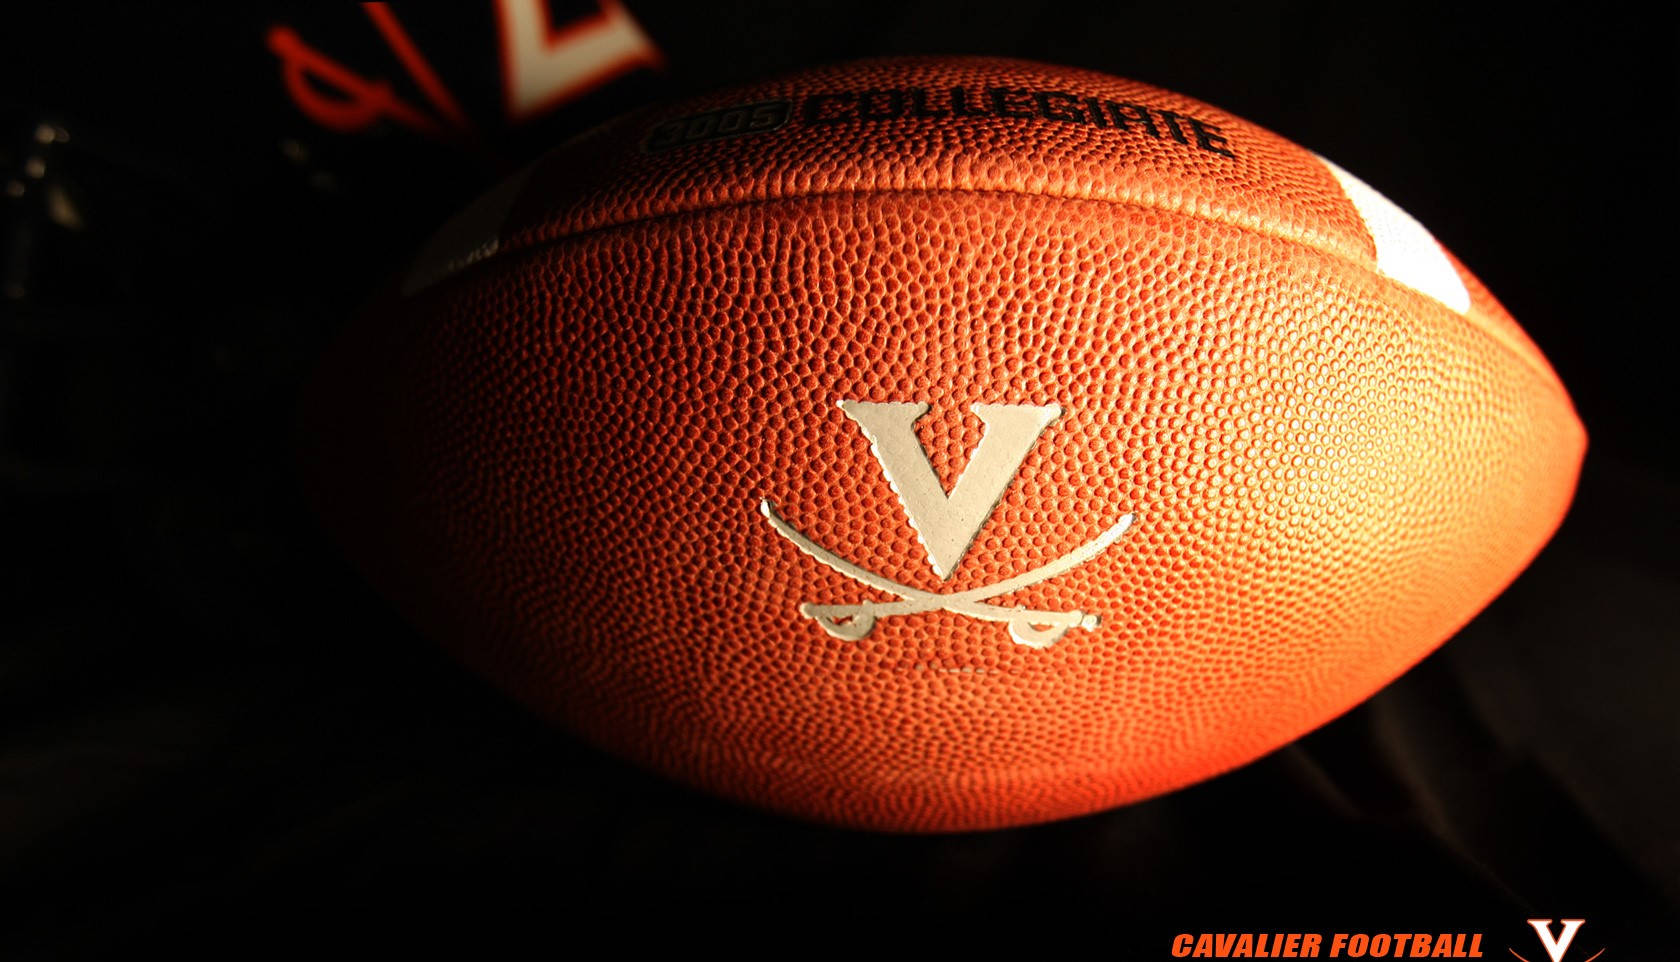 University Of Virginia Logo On Football Wallpaper